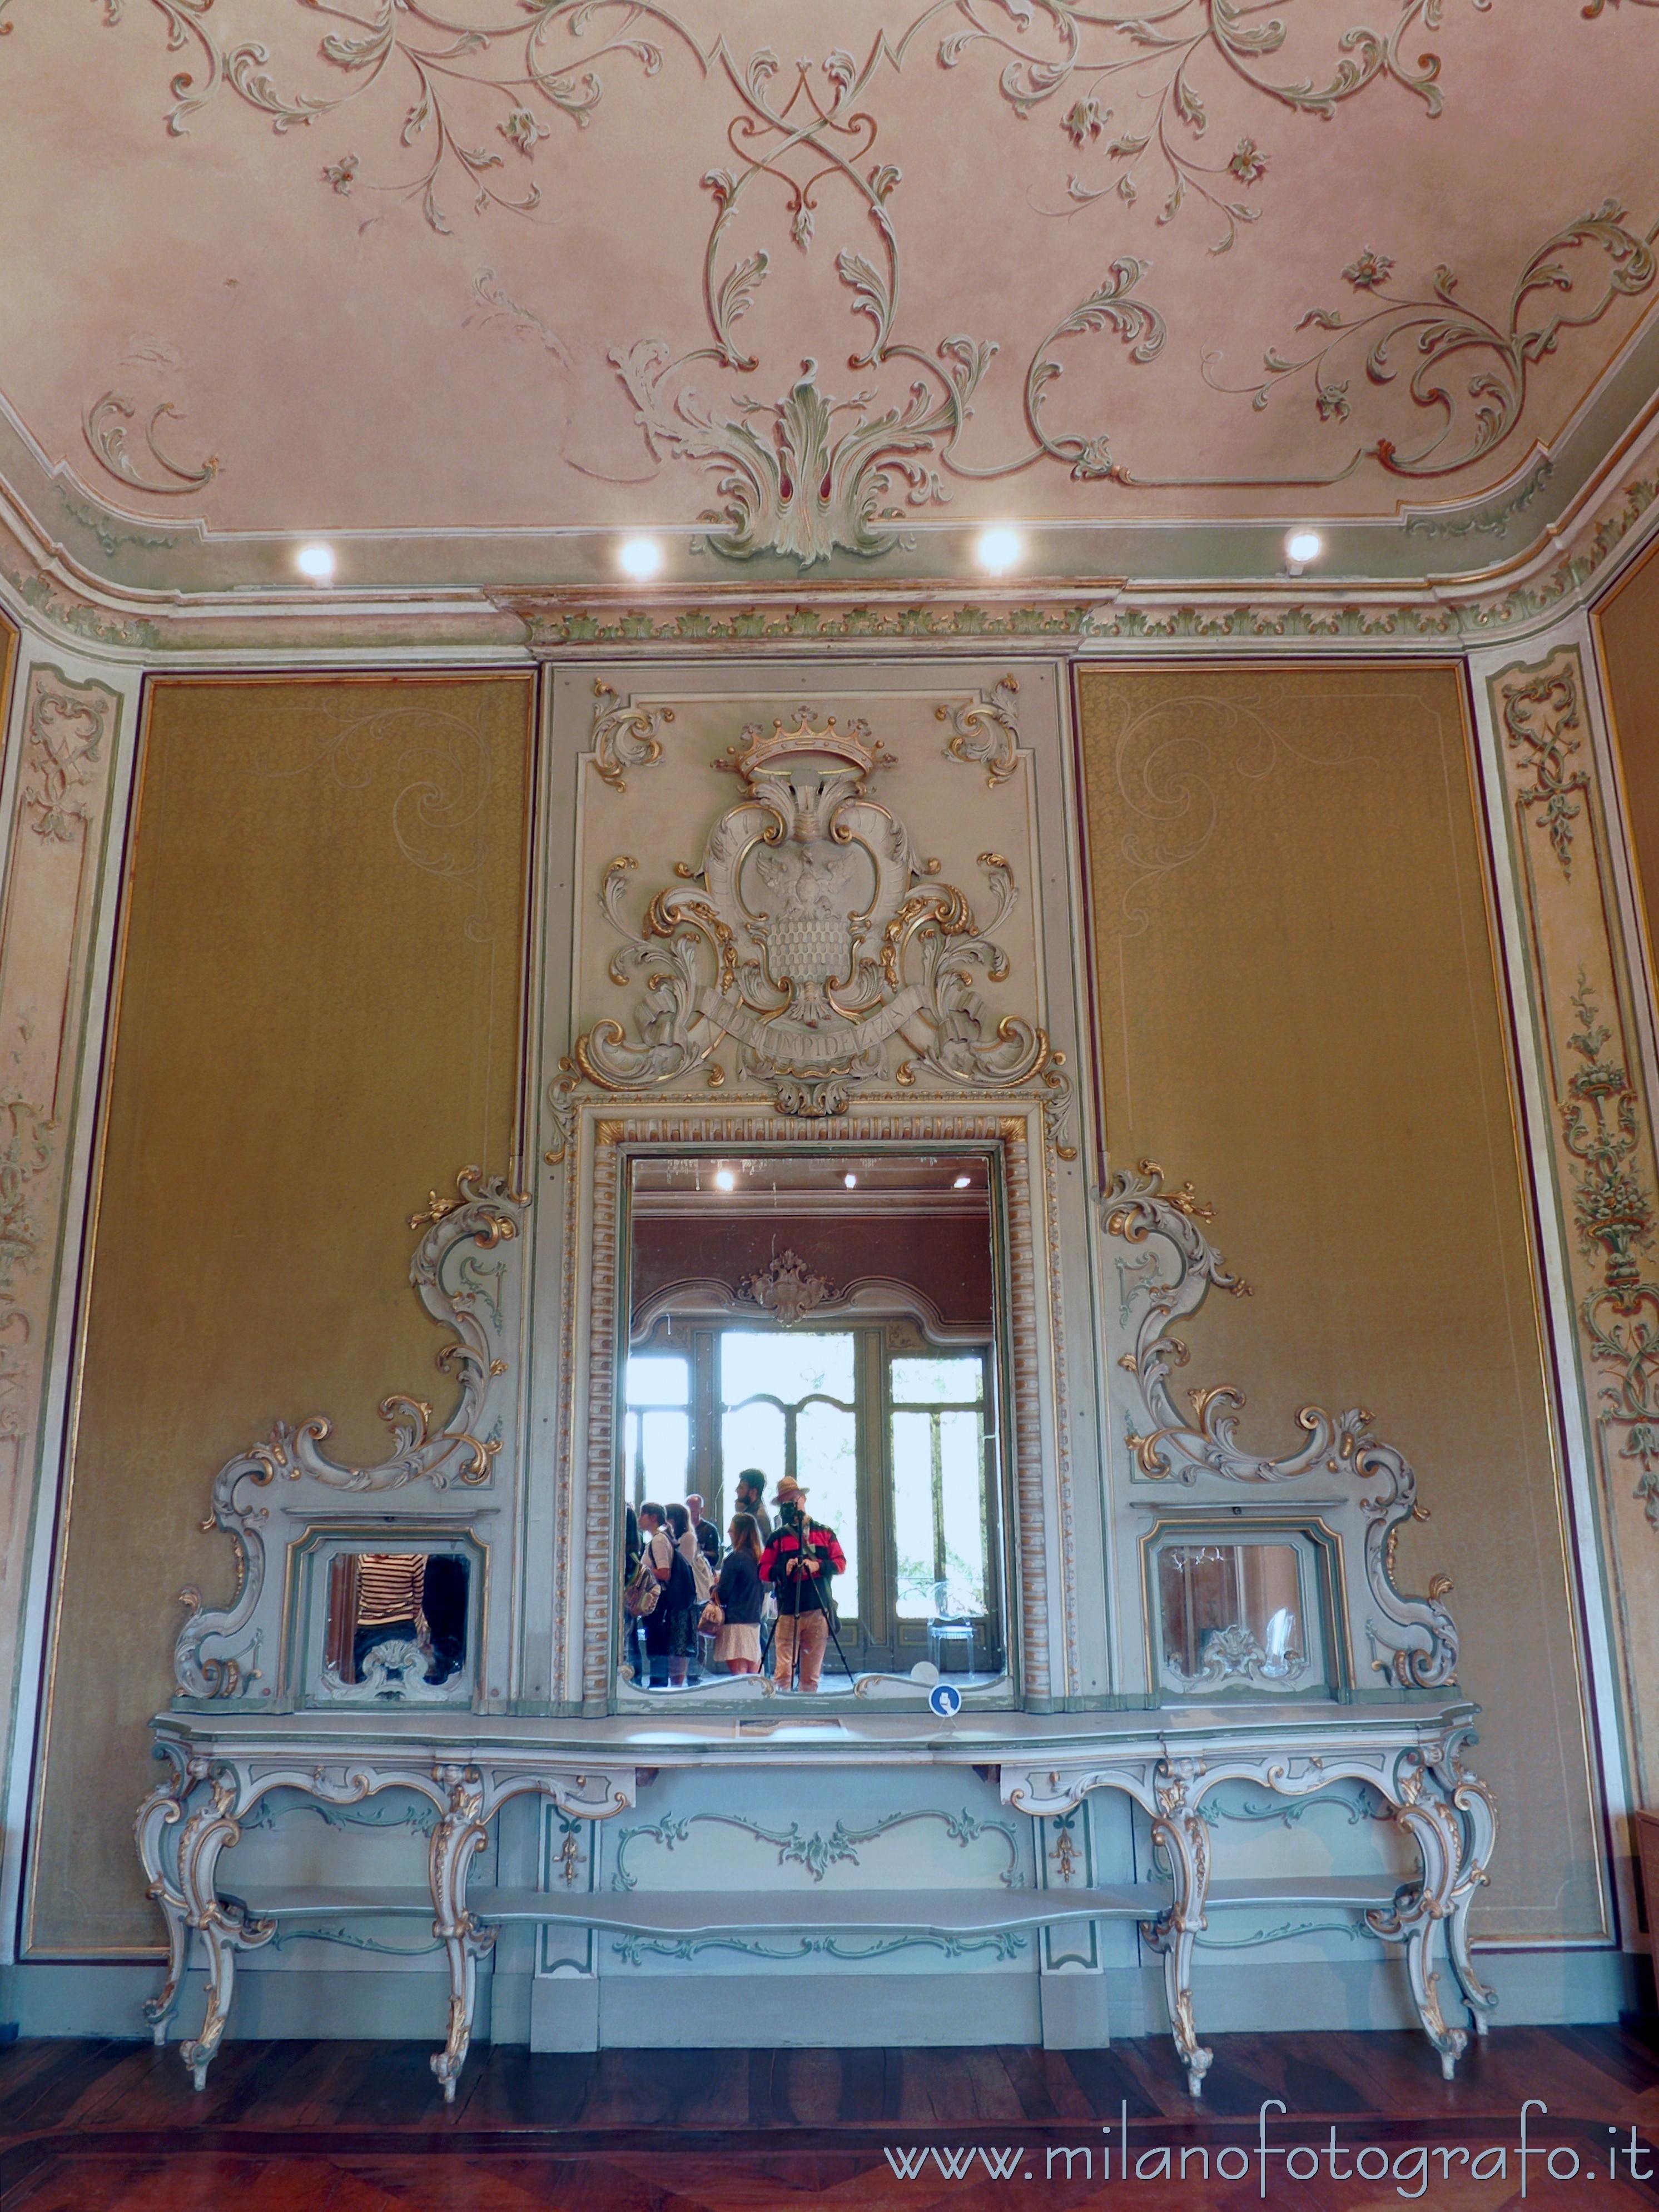 Arcore (Monza e Brianza, Italy): Mirror in the dining room of Villa Borromeo d'Adda - Arcore (Monza e Brianza, Italy)